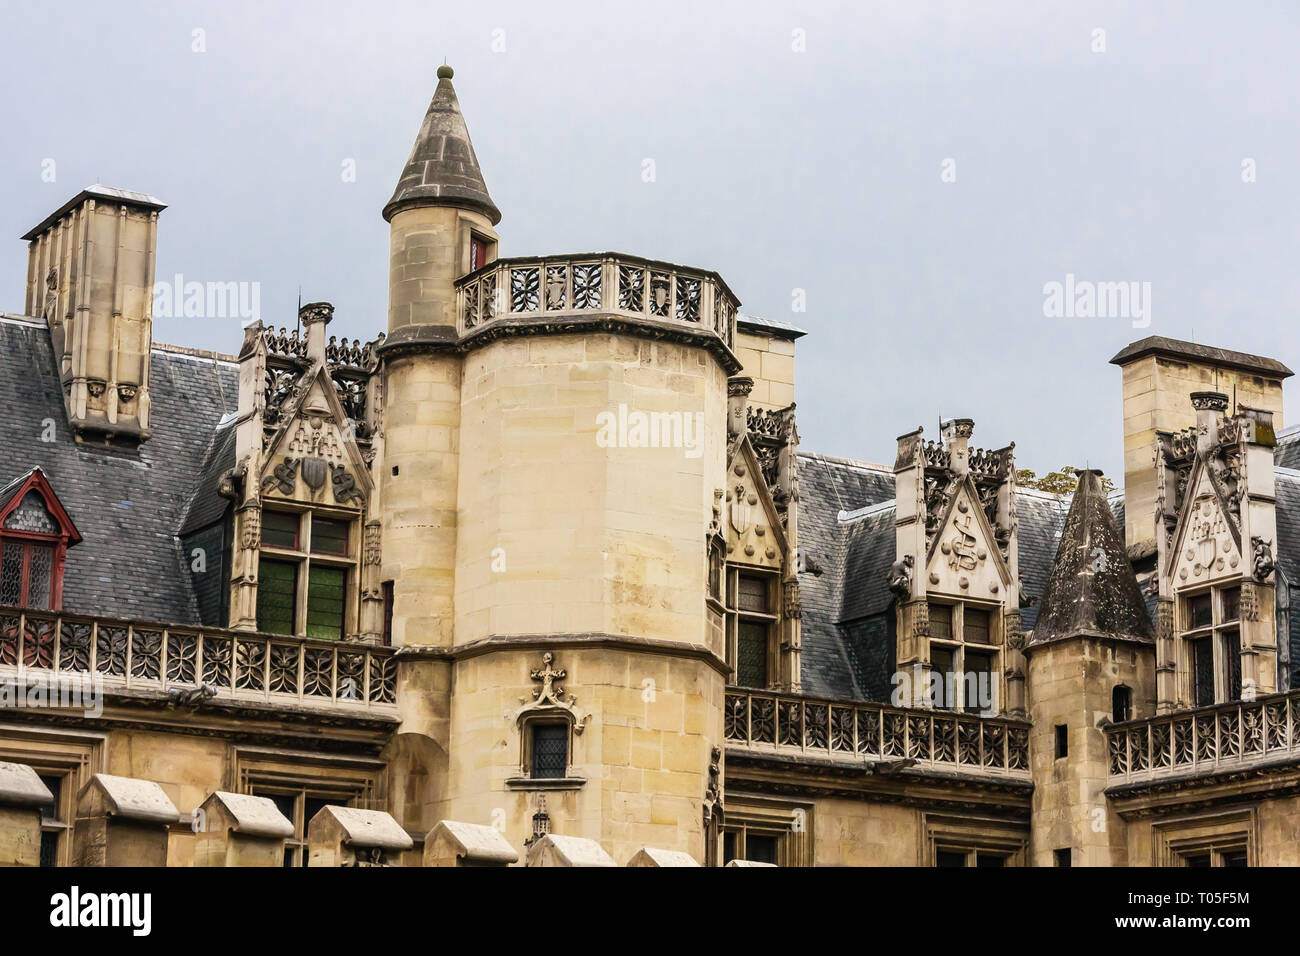 Vista del Musee de Cluny, un edificio storico del museo nazionale di arte medievale e del Medio Evo la storia si trova nel quinto arrondissement di Parigi, Francia. Foto Stock